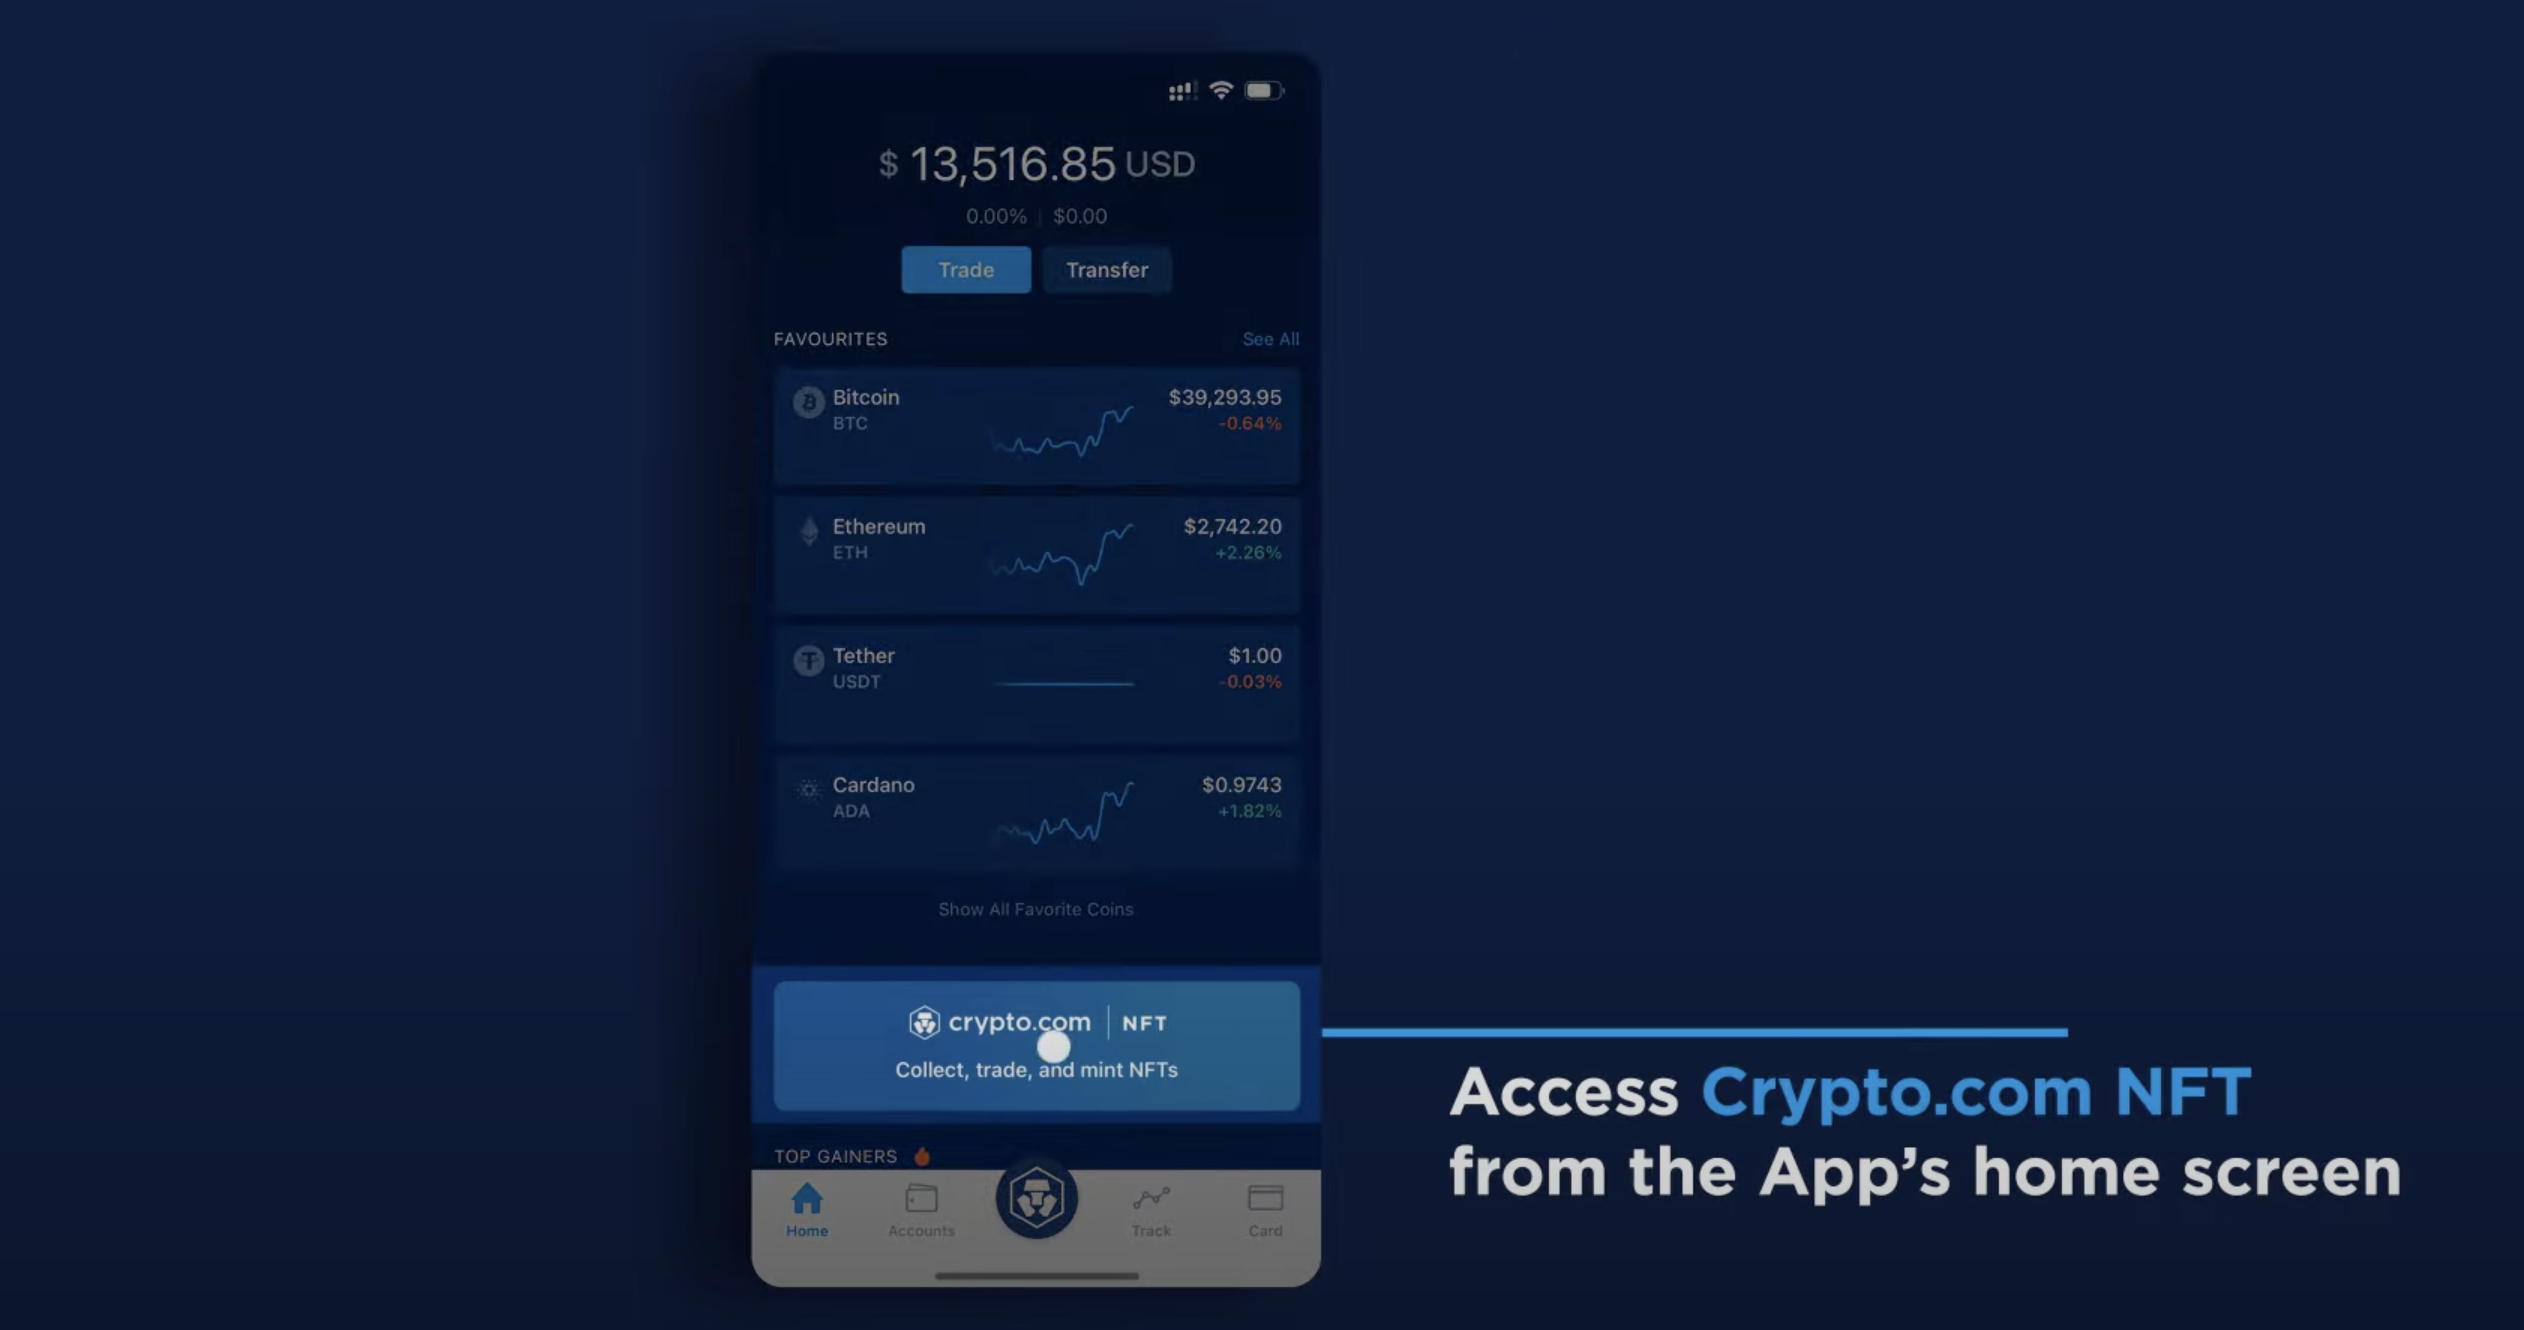 Crypto.com NFT app